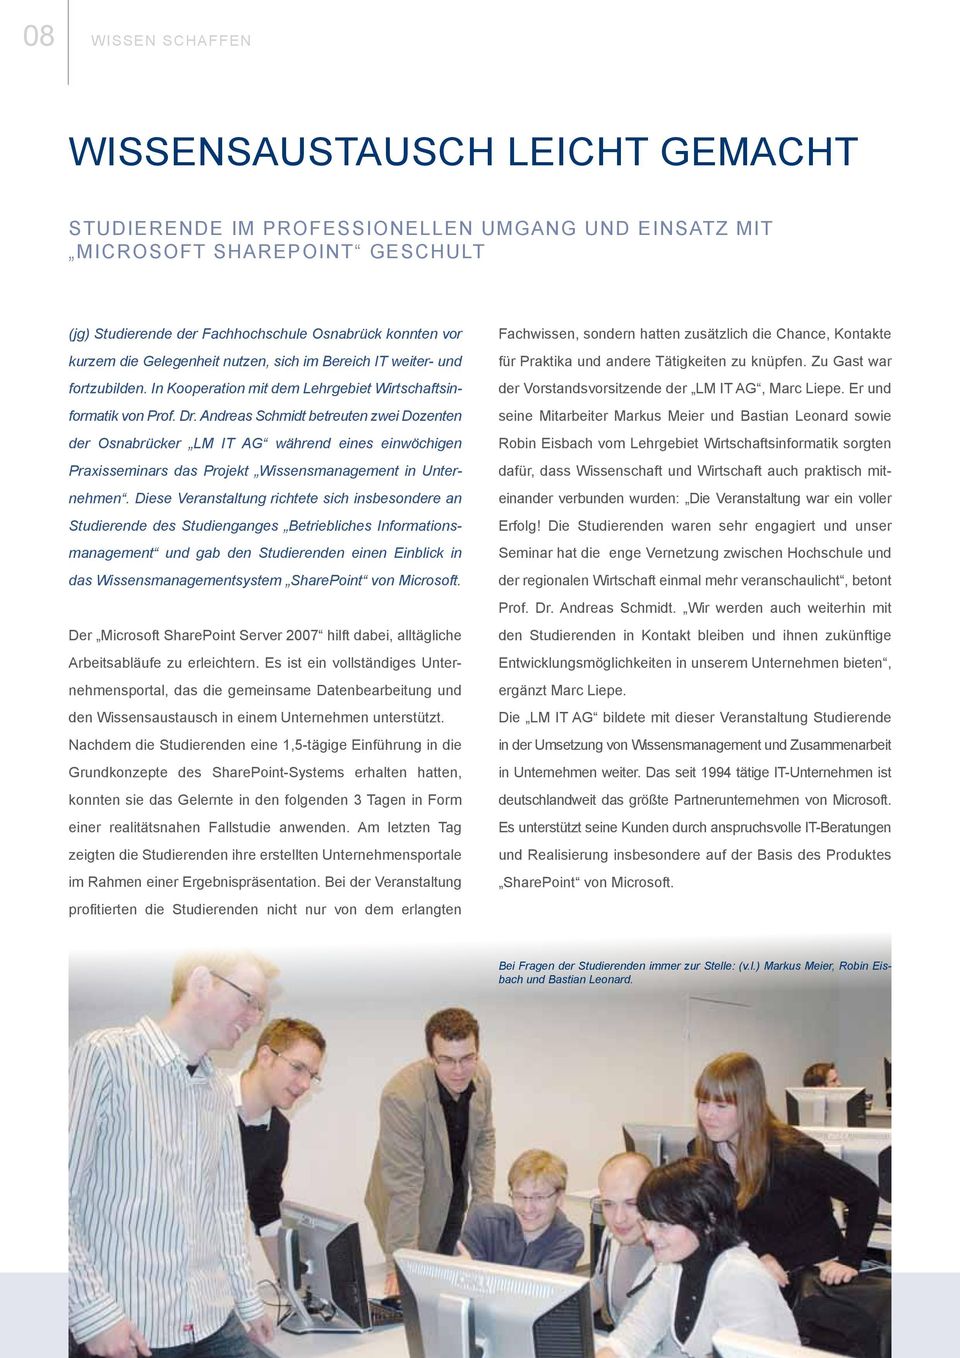 Andreas Schmidt betreuten zwei Dozenten der Osnabrücker LM IT AG während eines einwöchigen Praxisseminars das Projekt Wissensmanagement in Unternehmen.